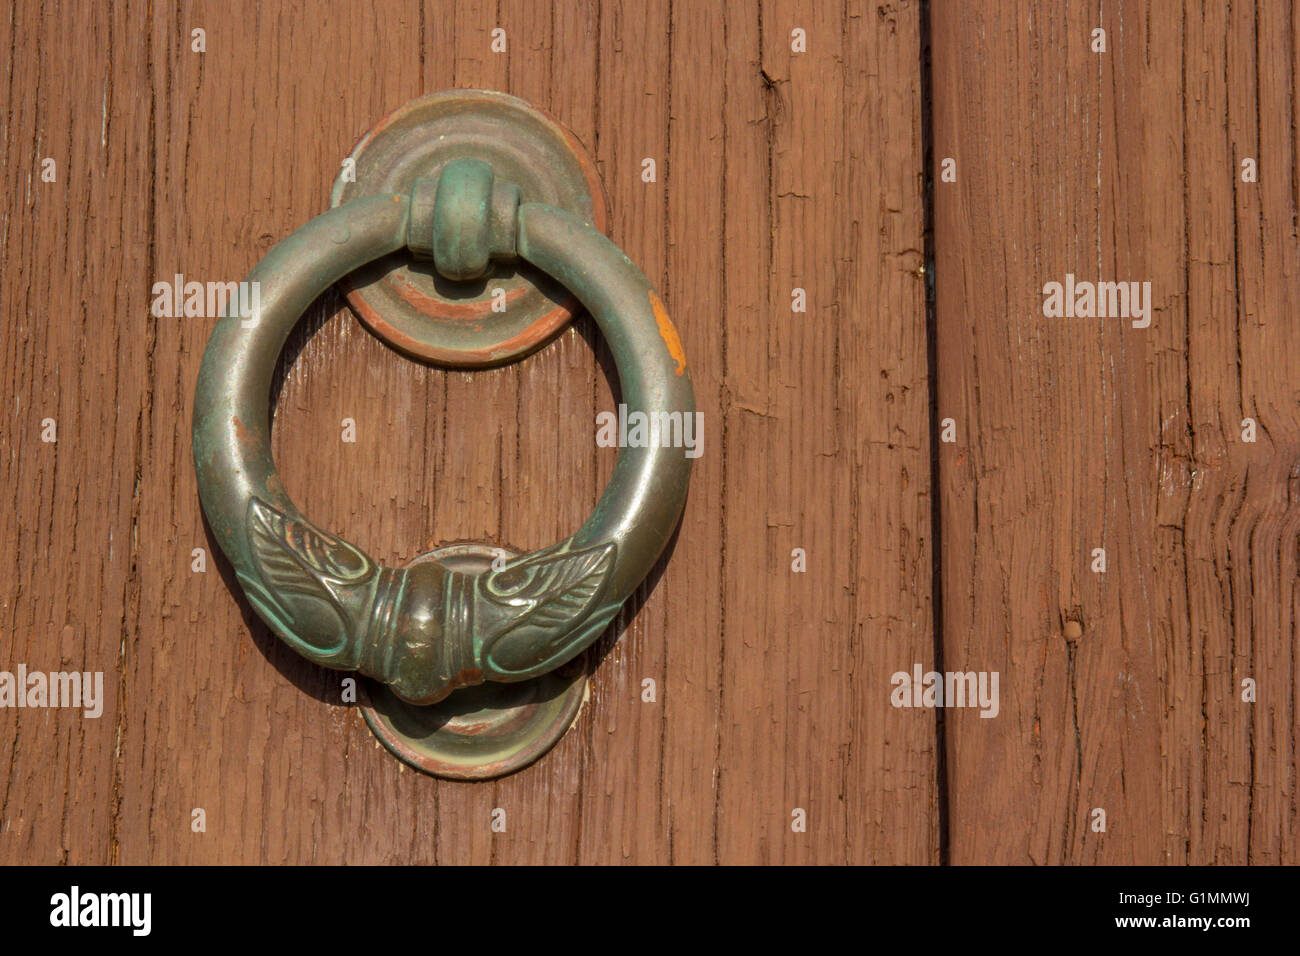 Knocker brass ring of old wooden door Stock Photo